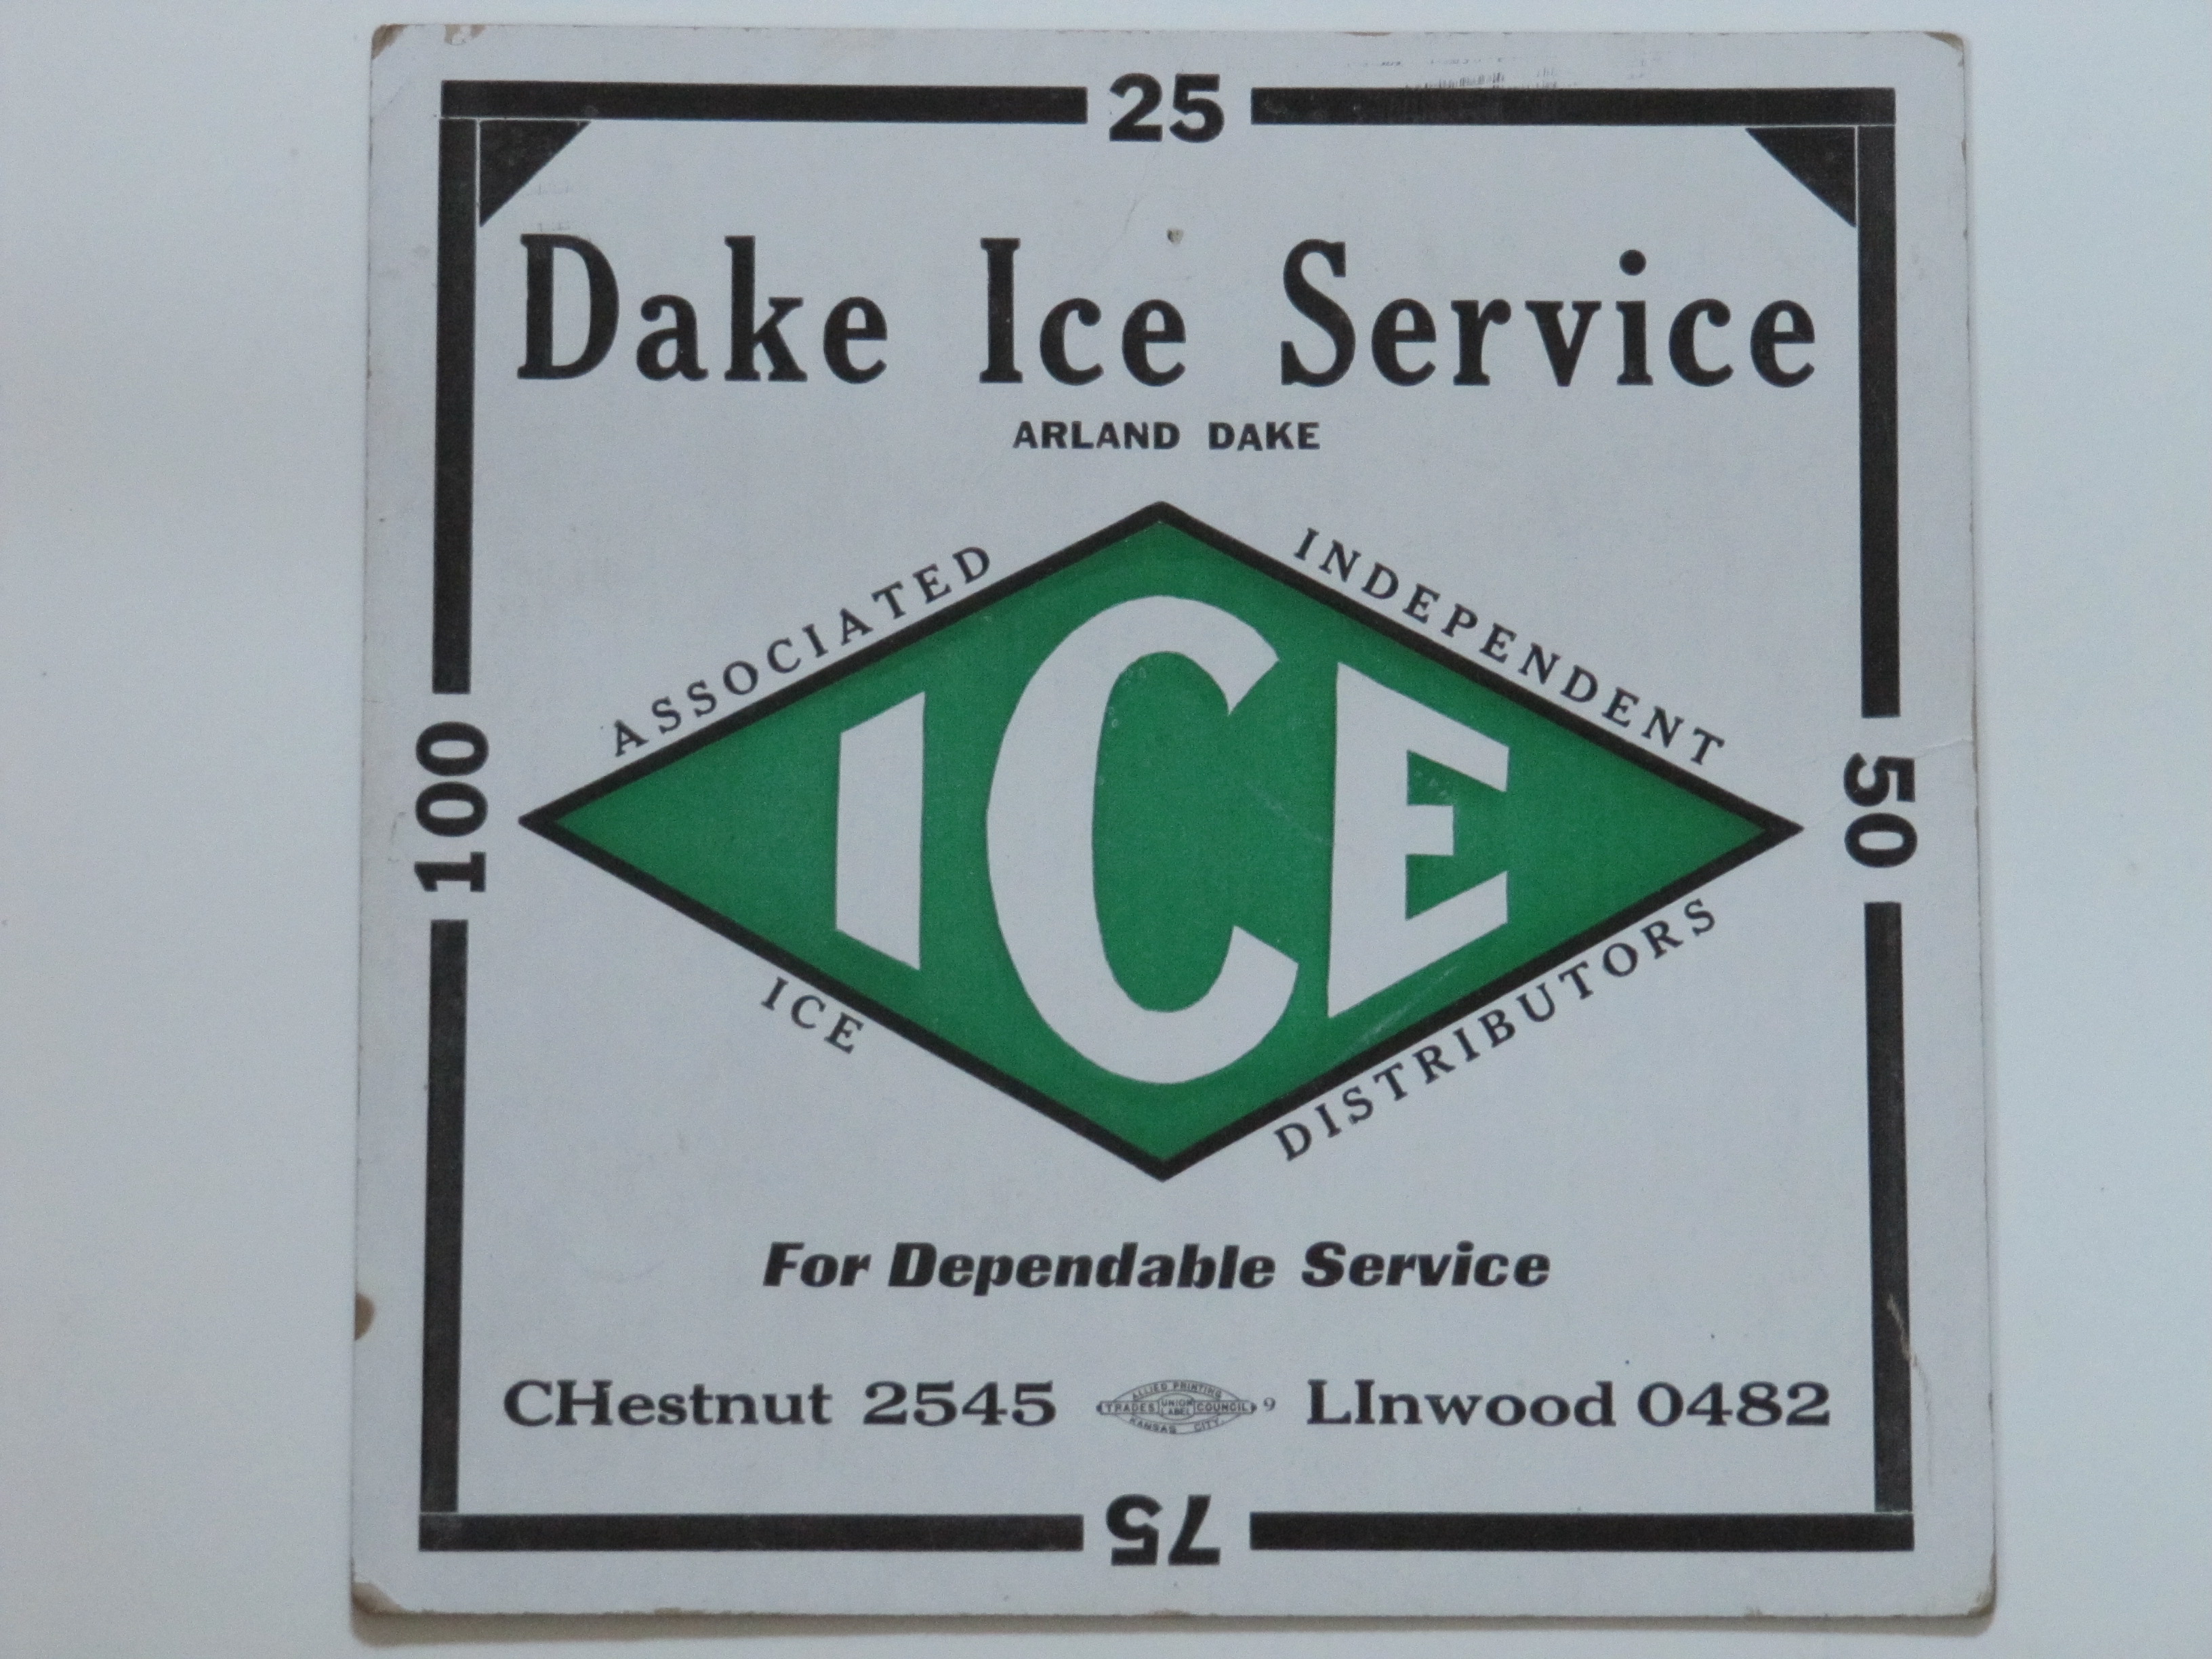 Dake Ice Service